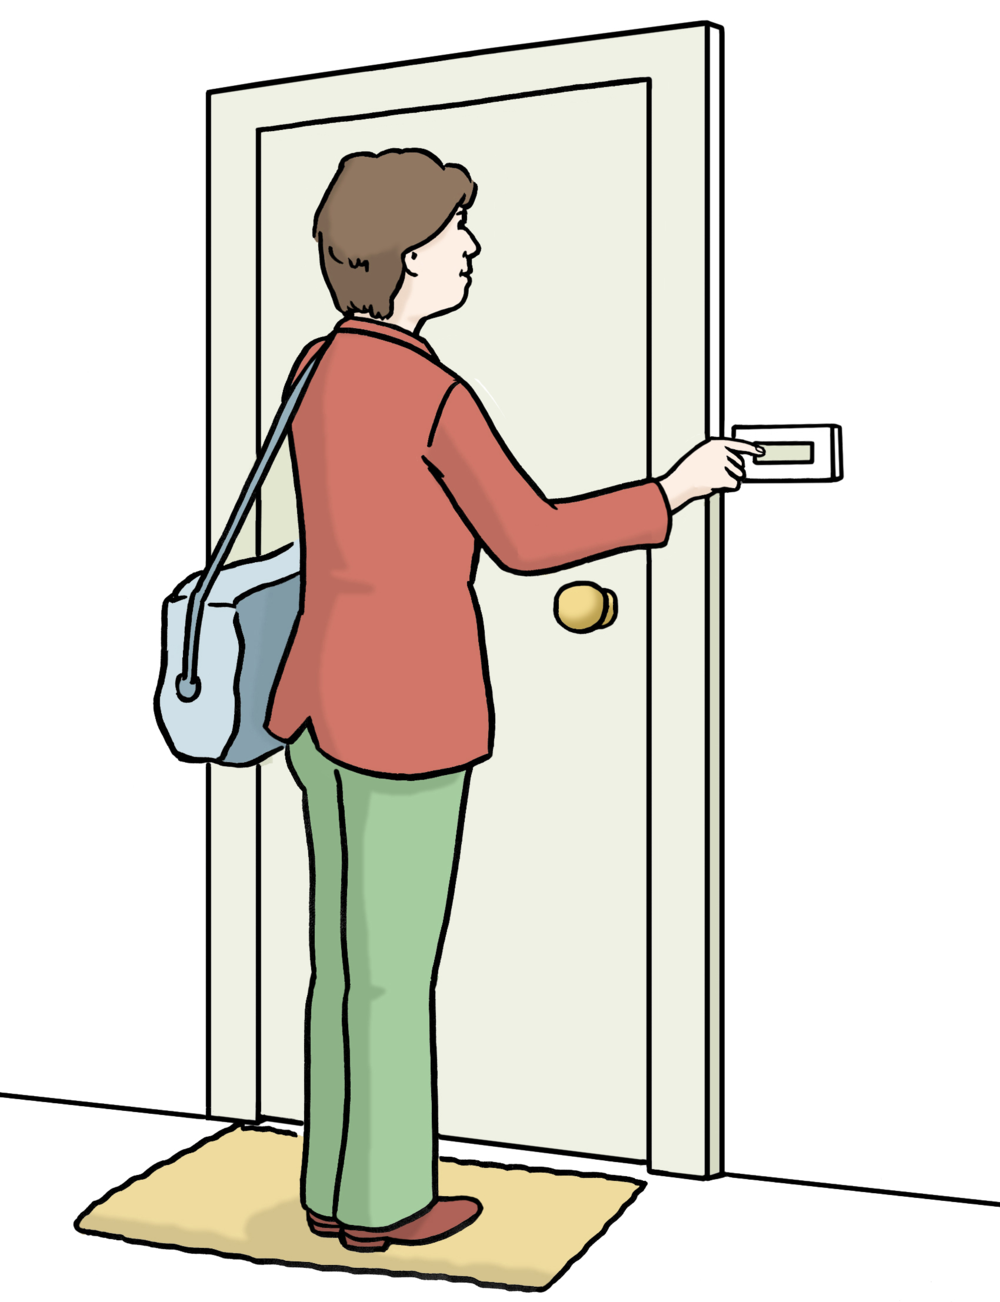 Eine Frau klingelt an einer Tür